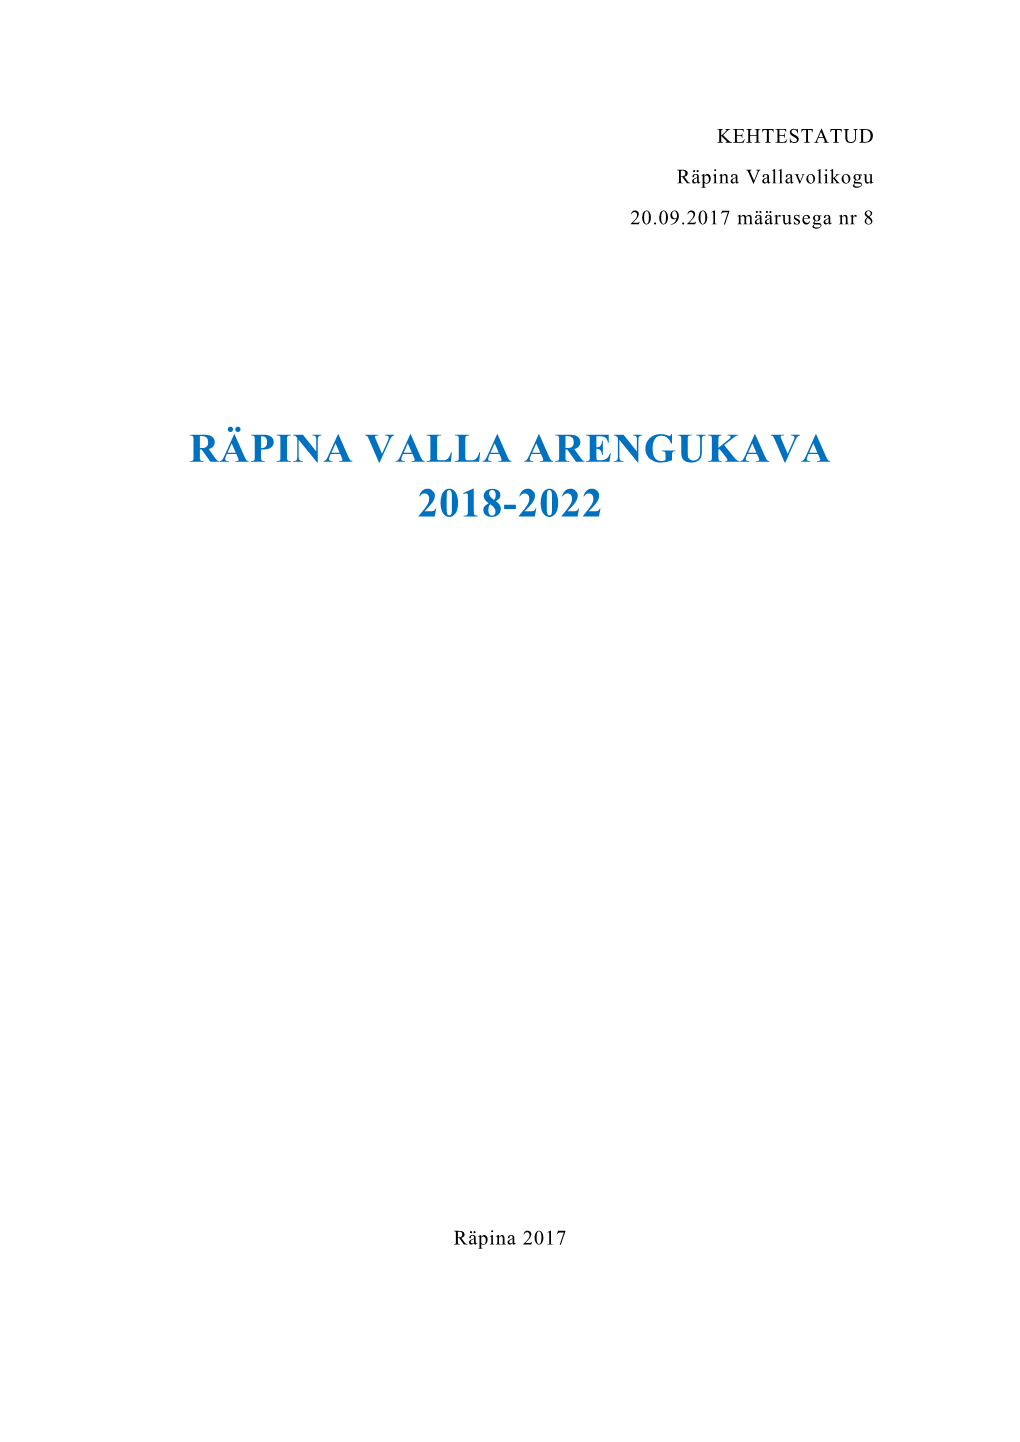 Räpina Valla Arengukava 2018-2022